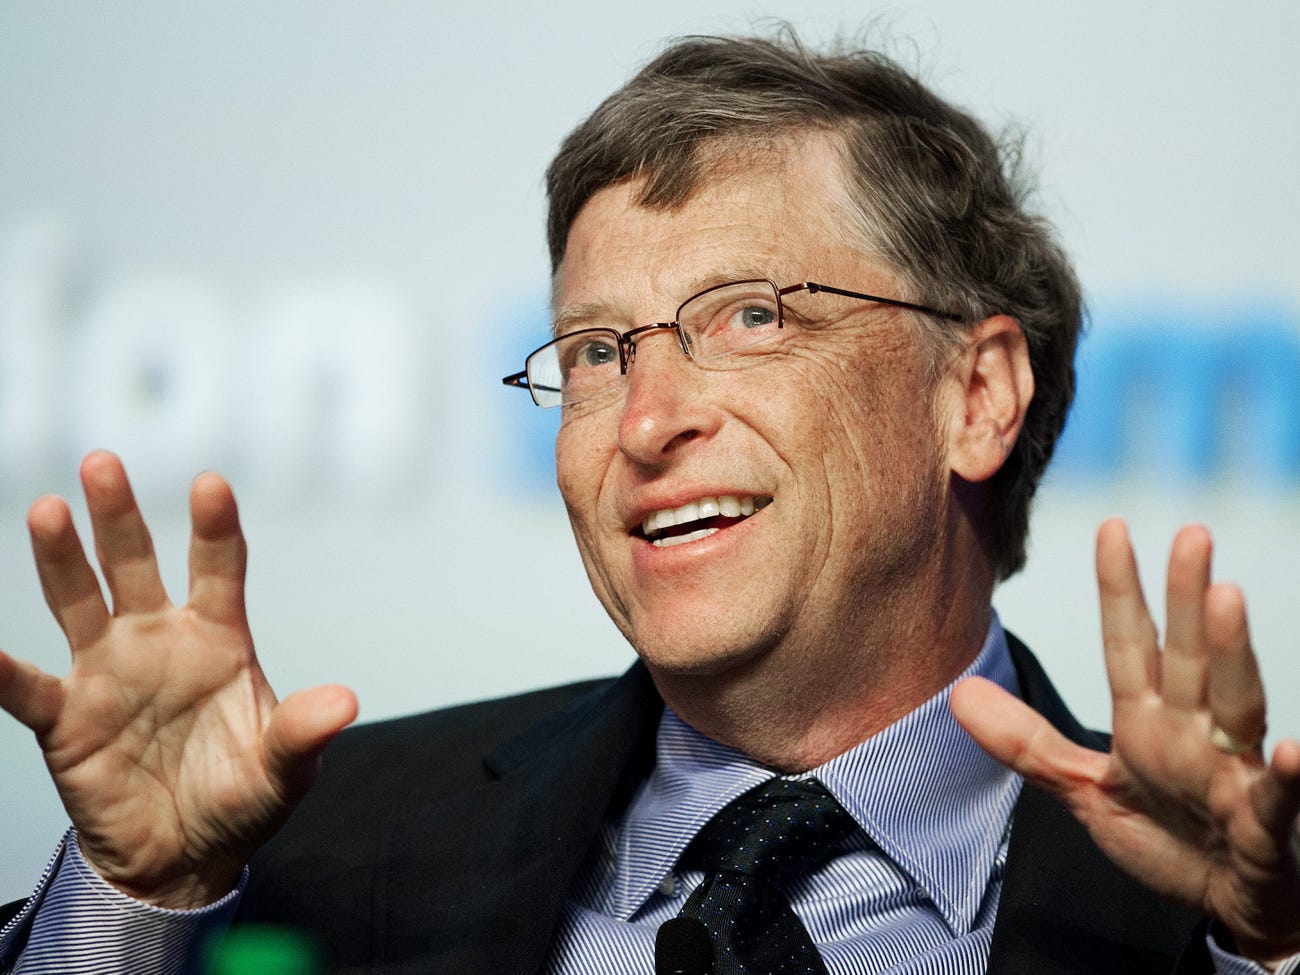 Bill Gates cảnh báo về ChatGPT: Đừng vội “chê” mà nó có thể thay đổi thế giới như máy vi tính và Internet đã từng làm - Ảnh 1.